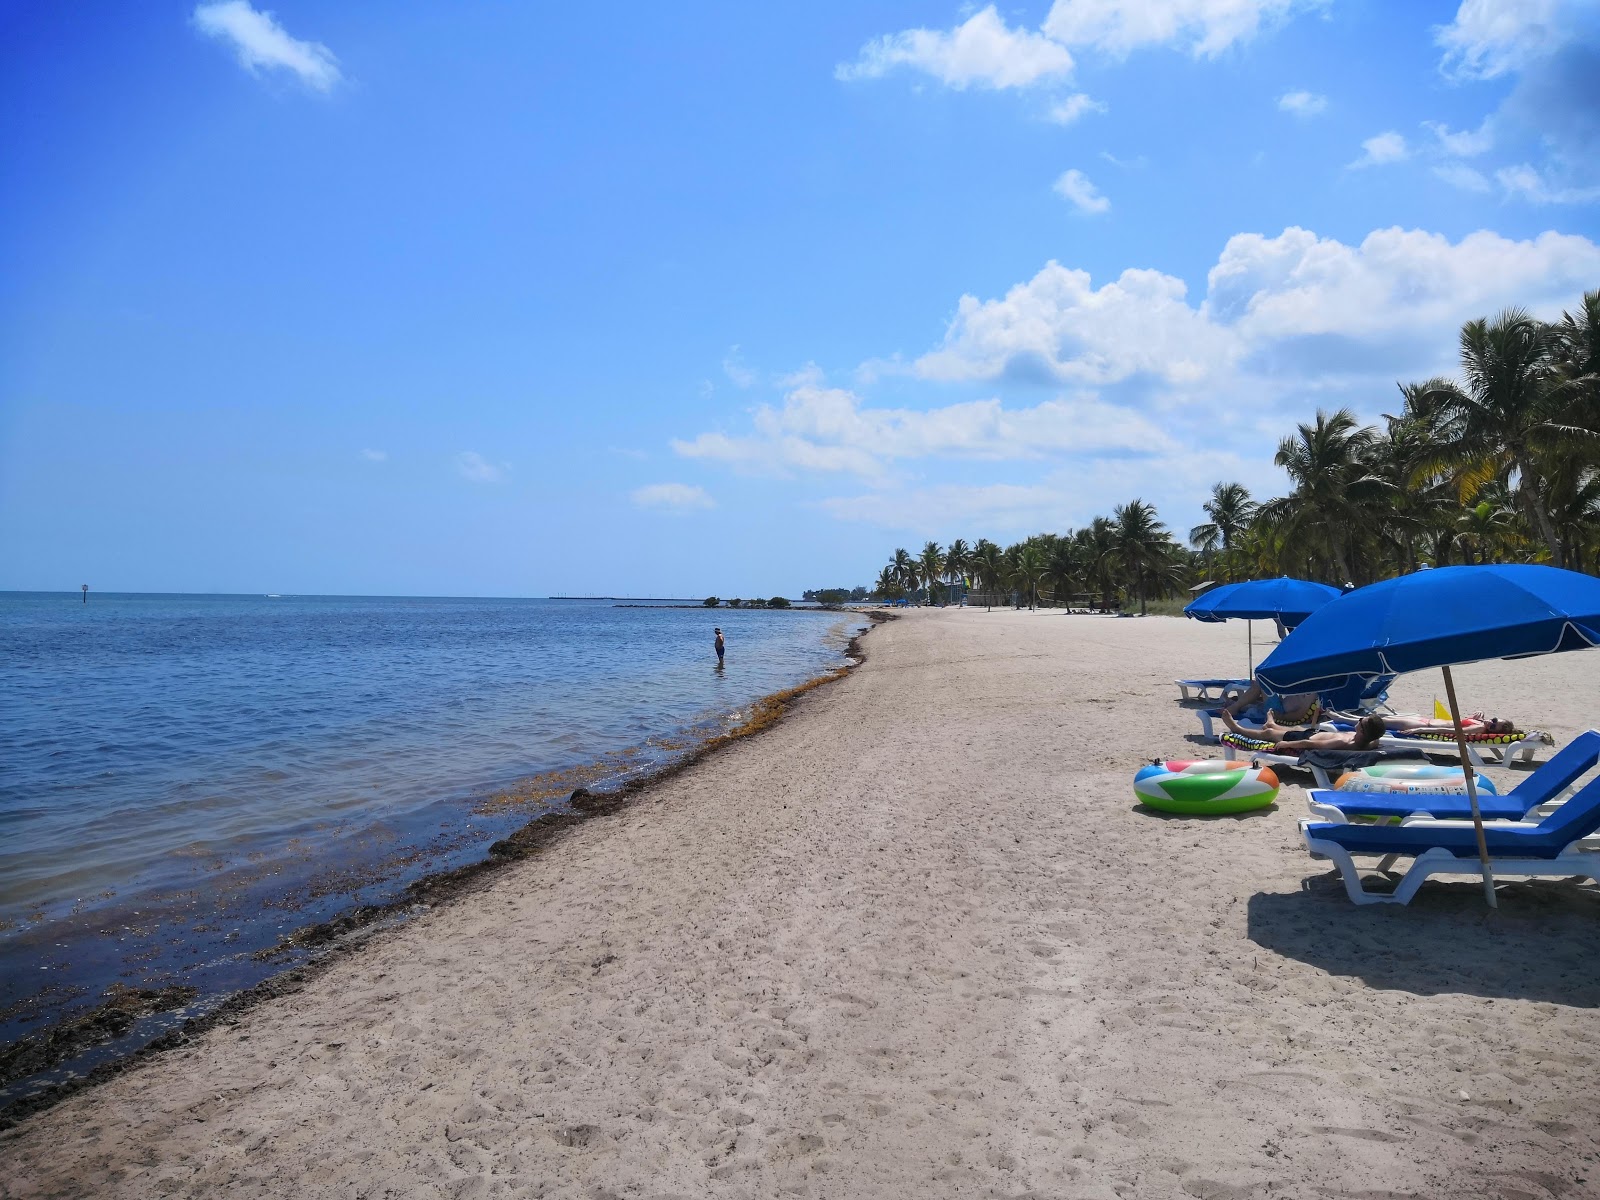 Foto de Smathers beach - lugar popular entre os apreciadores de relaxamento